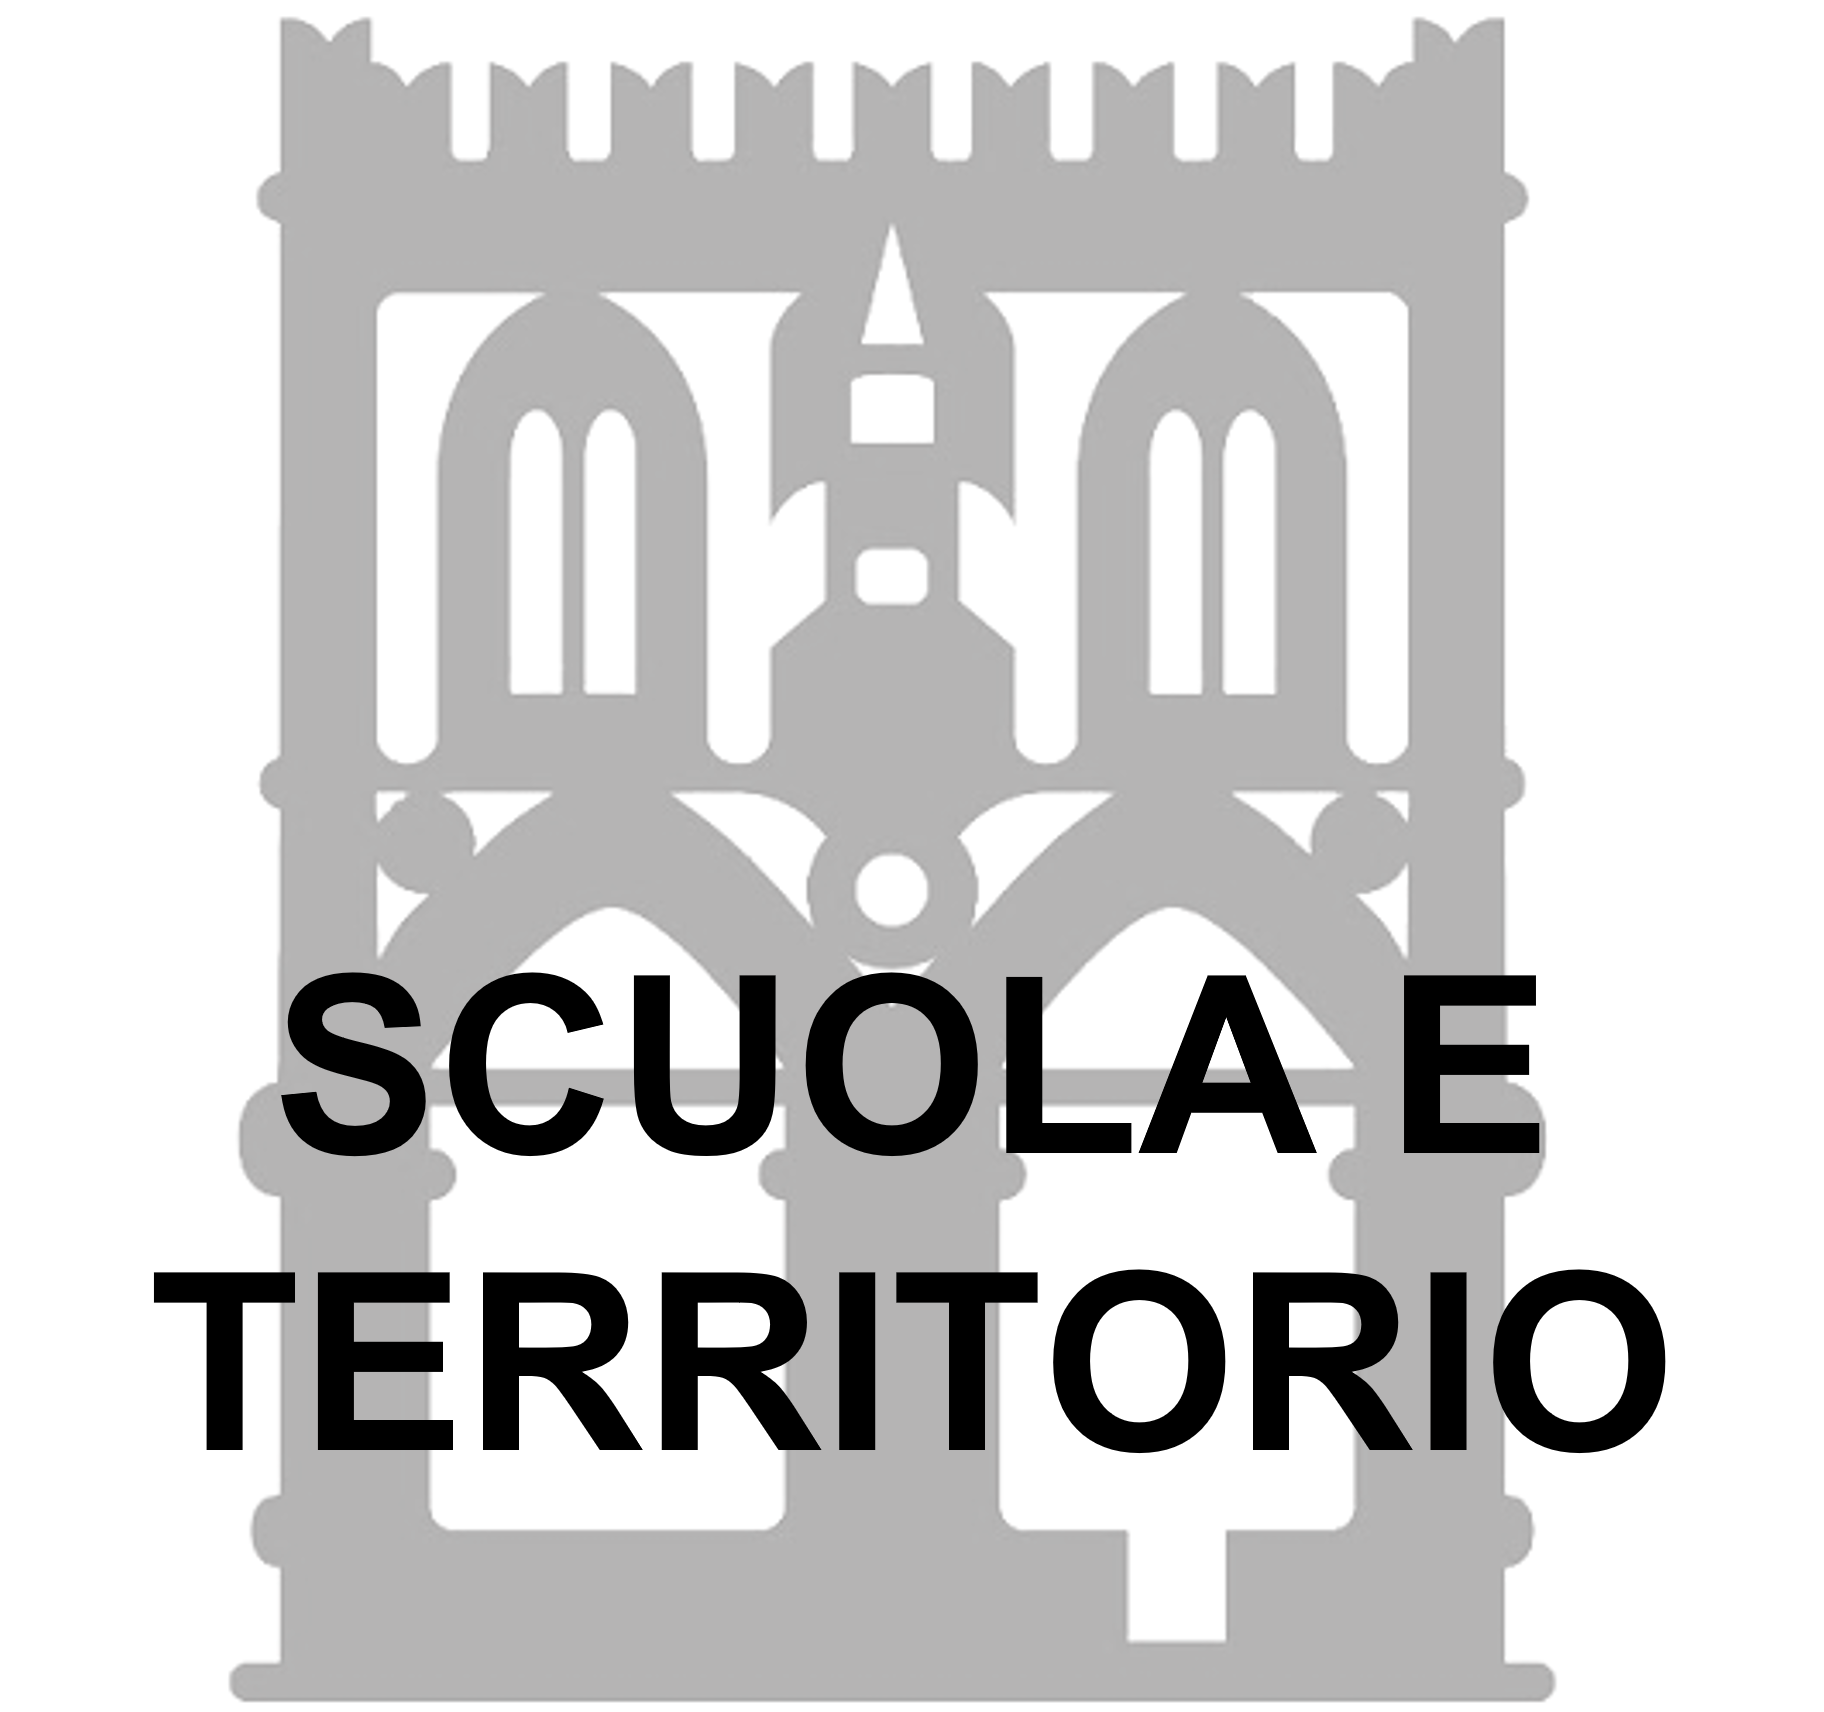 Online i materiali del webinar "Scuola e territorio" della Camera di Commercio di Bologna